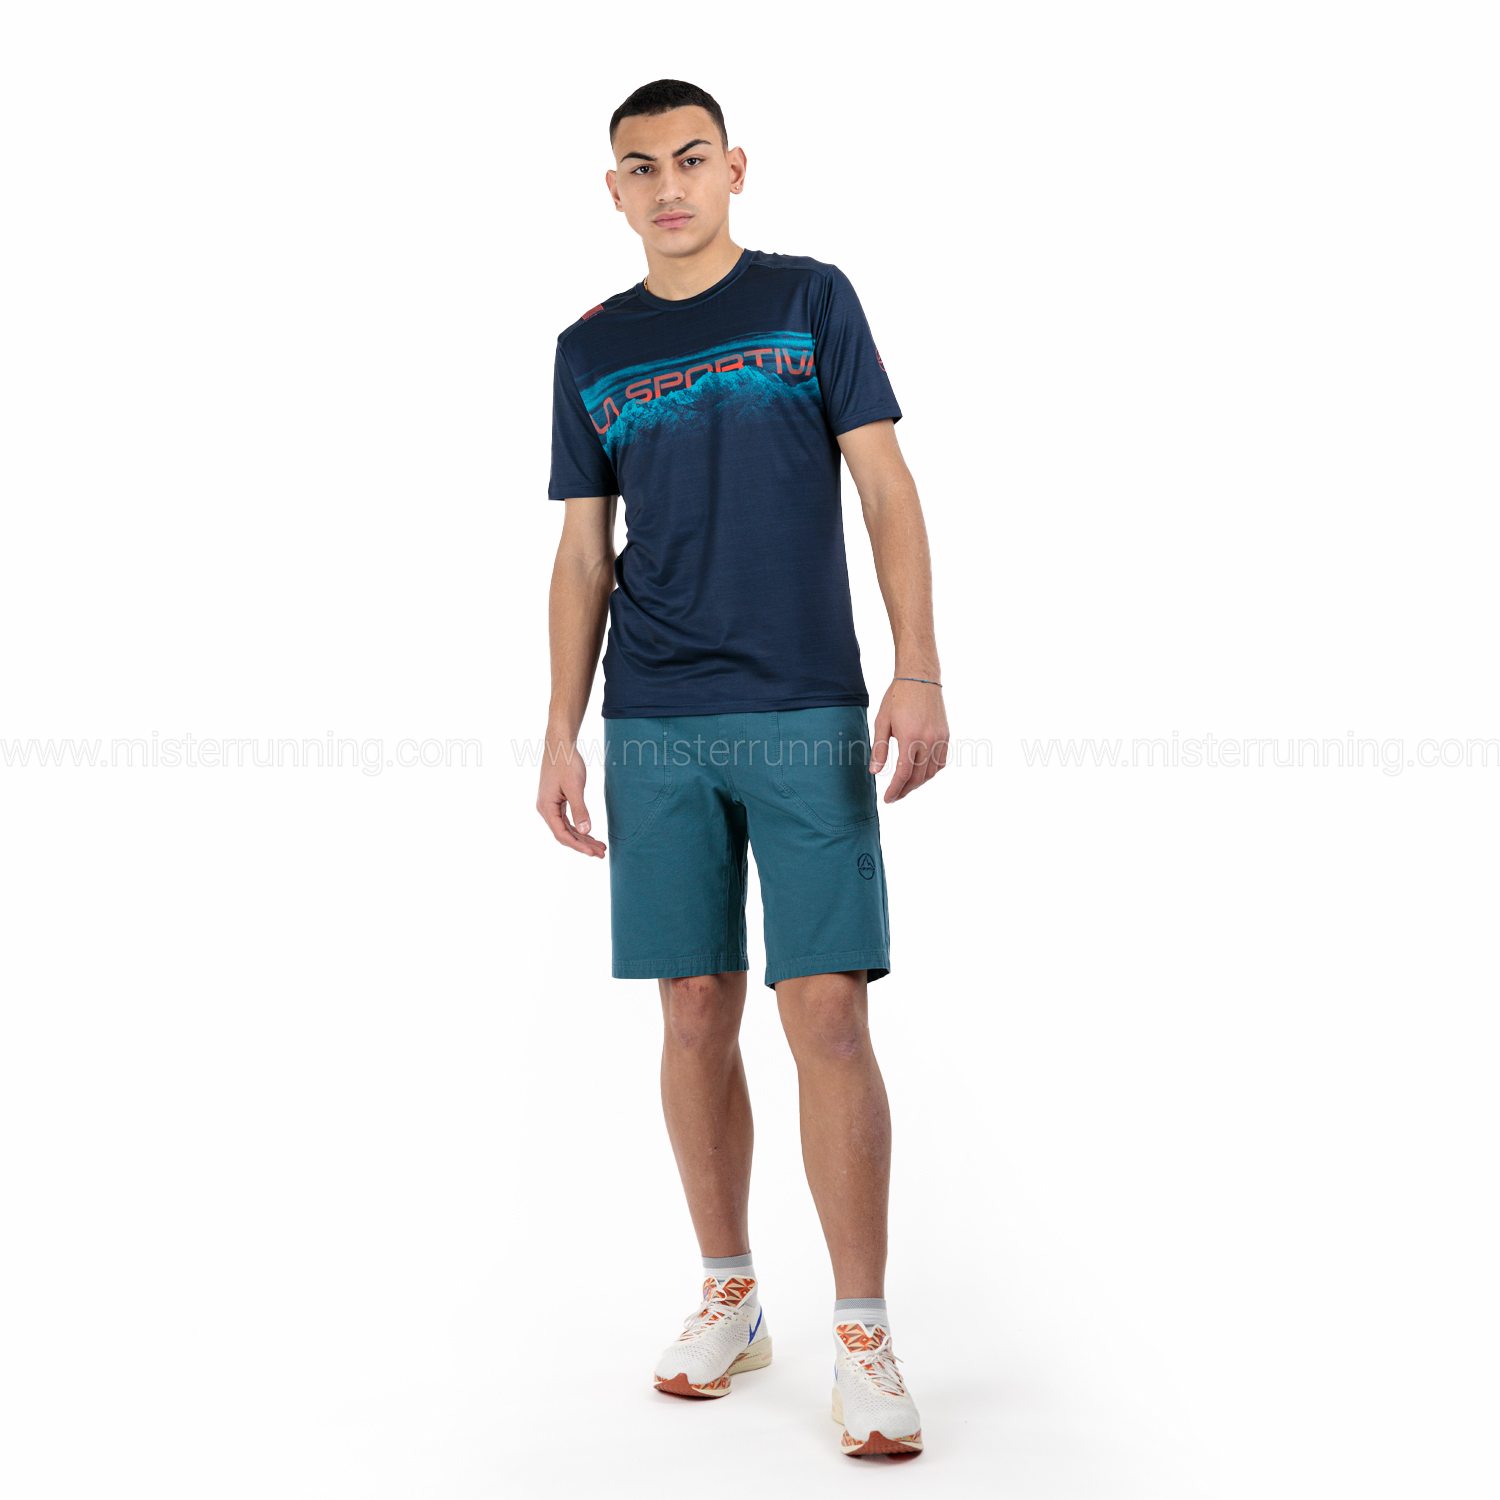 La Sportiva Horizon Camiseta - Deep Sea